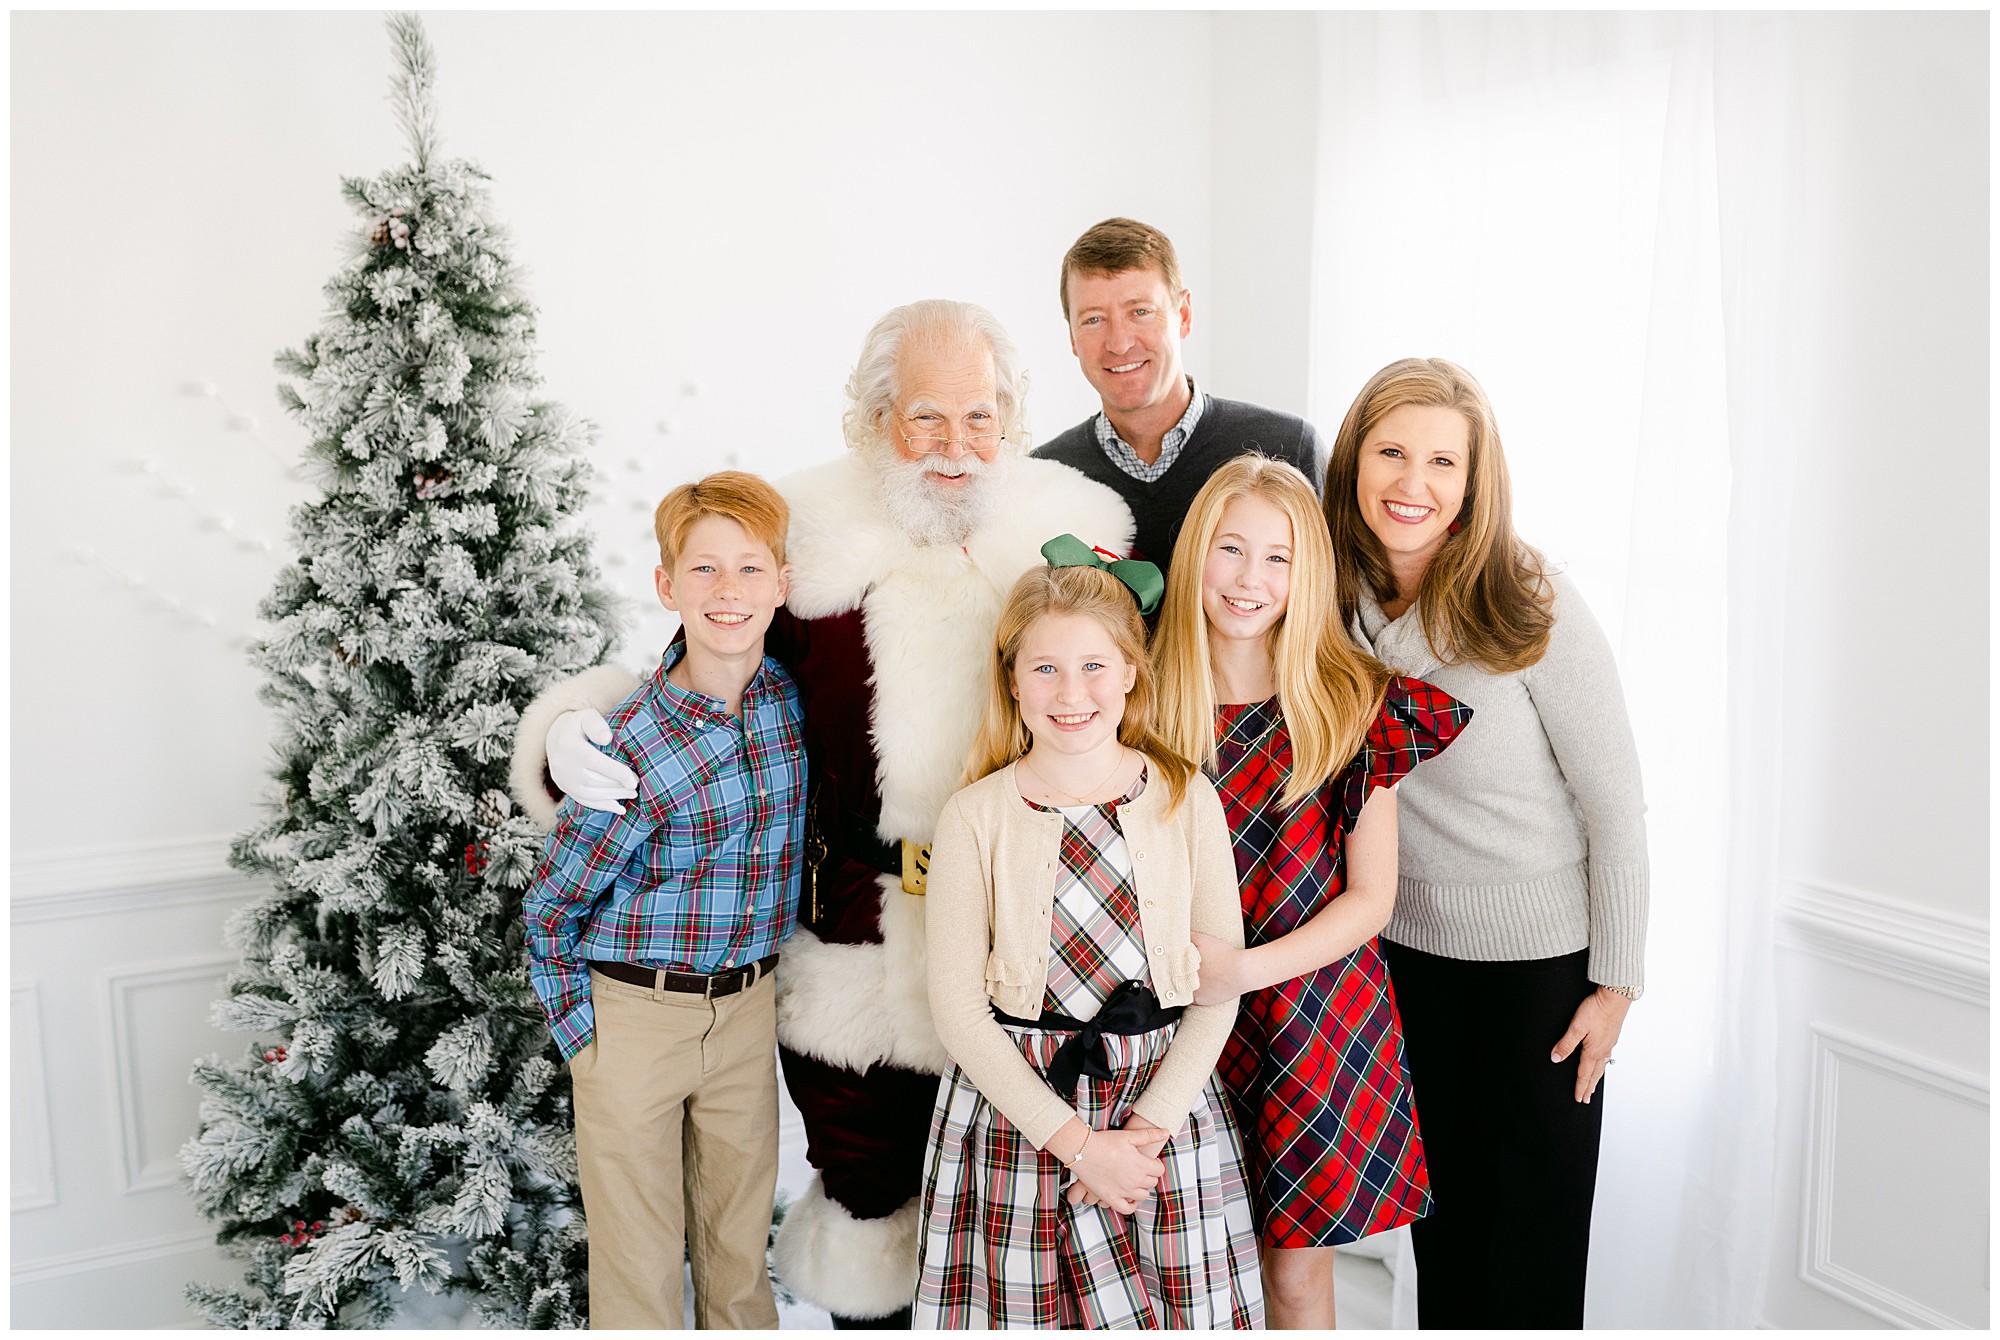 A family of 5 poses with Santa during an Atlanta Santa photo session.